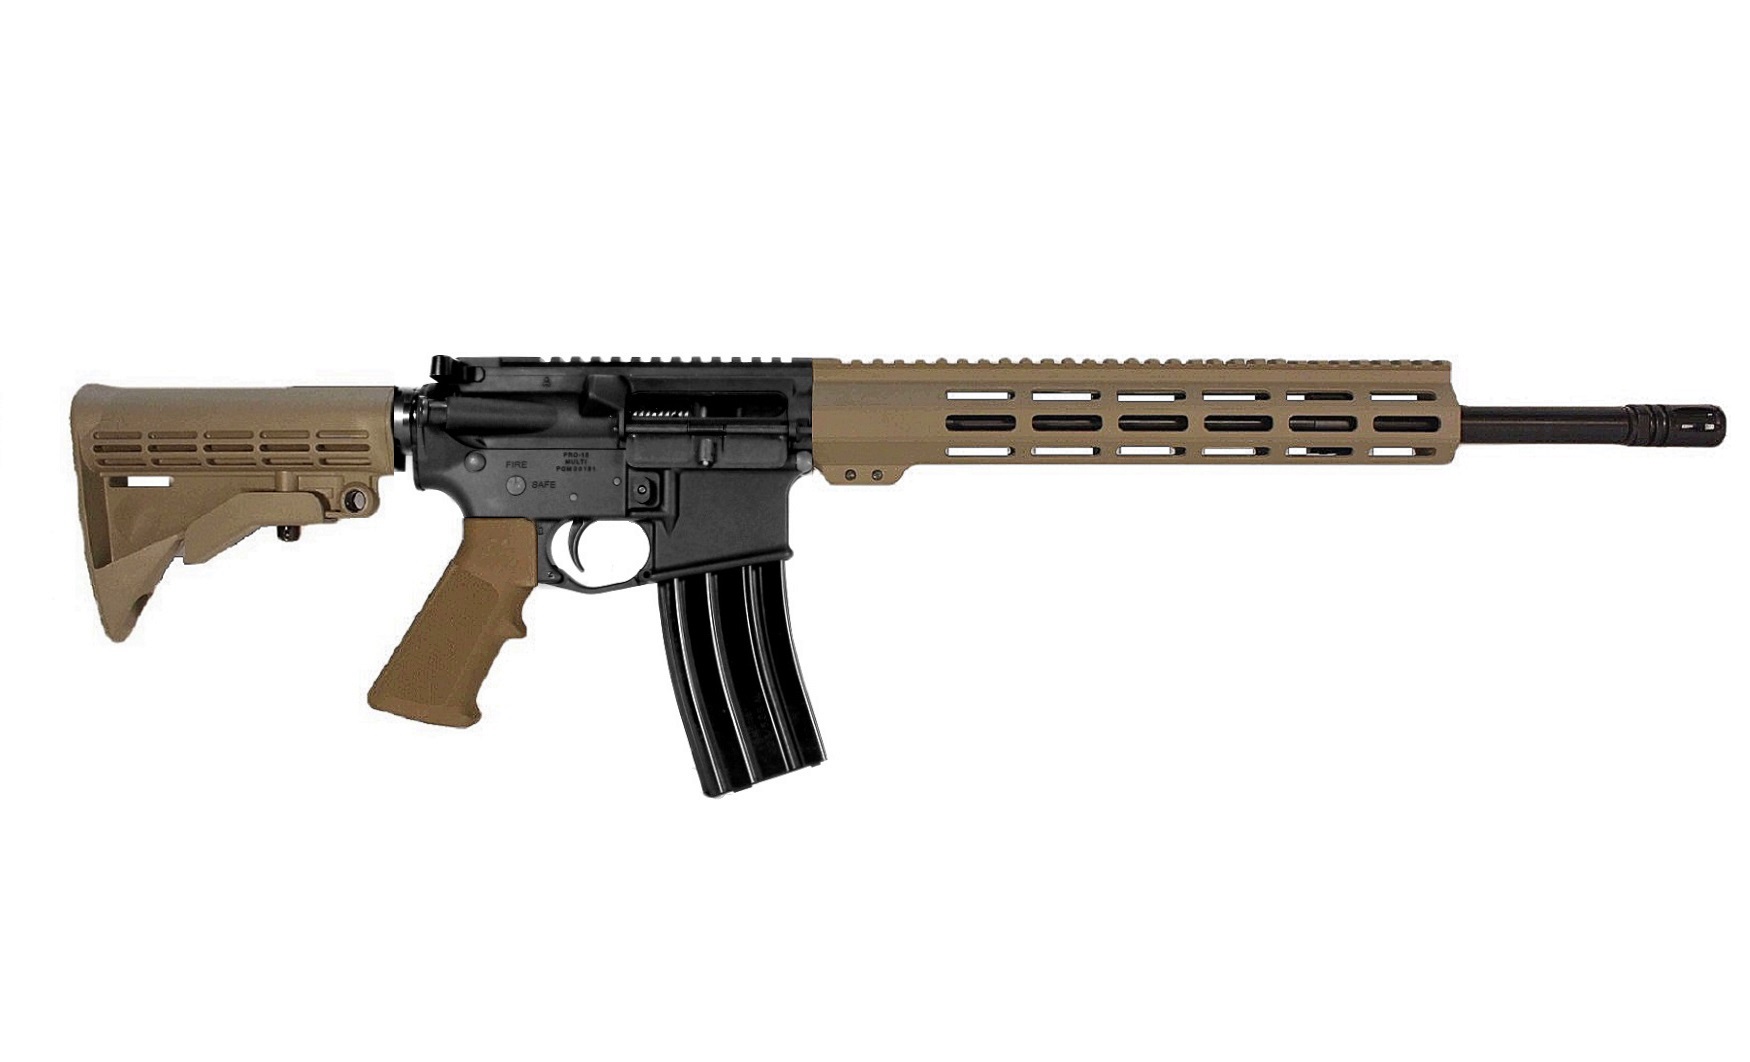 16 inch 6.8 SPC II AR Rifle in BLK/FDE